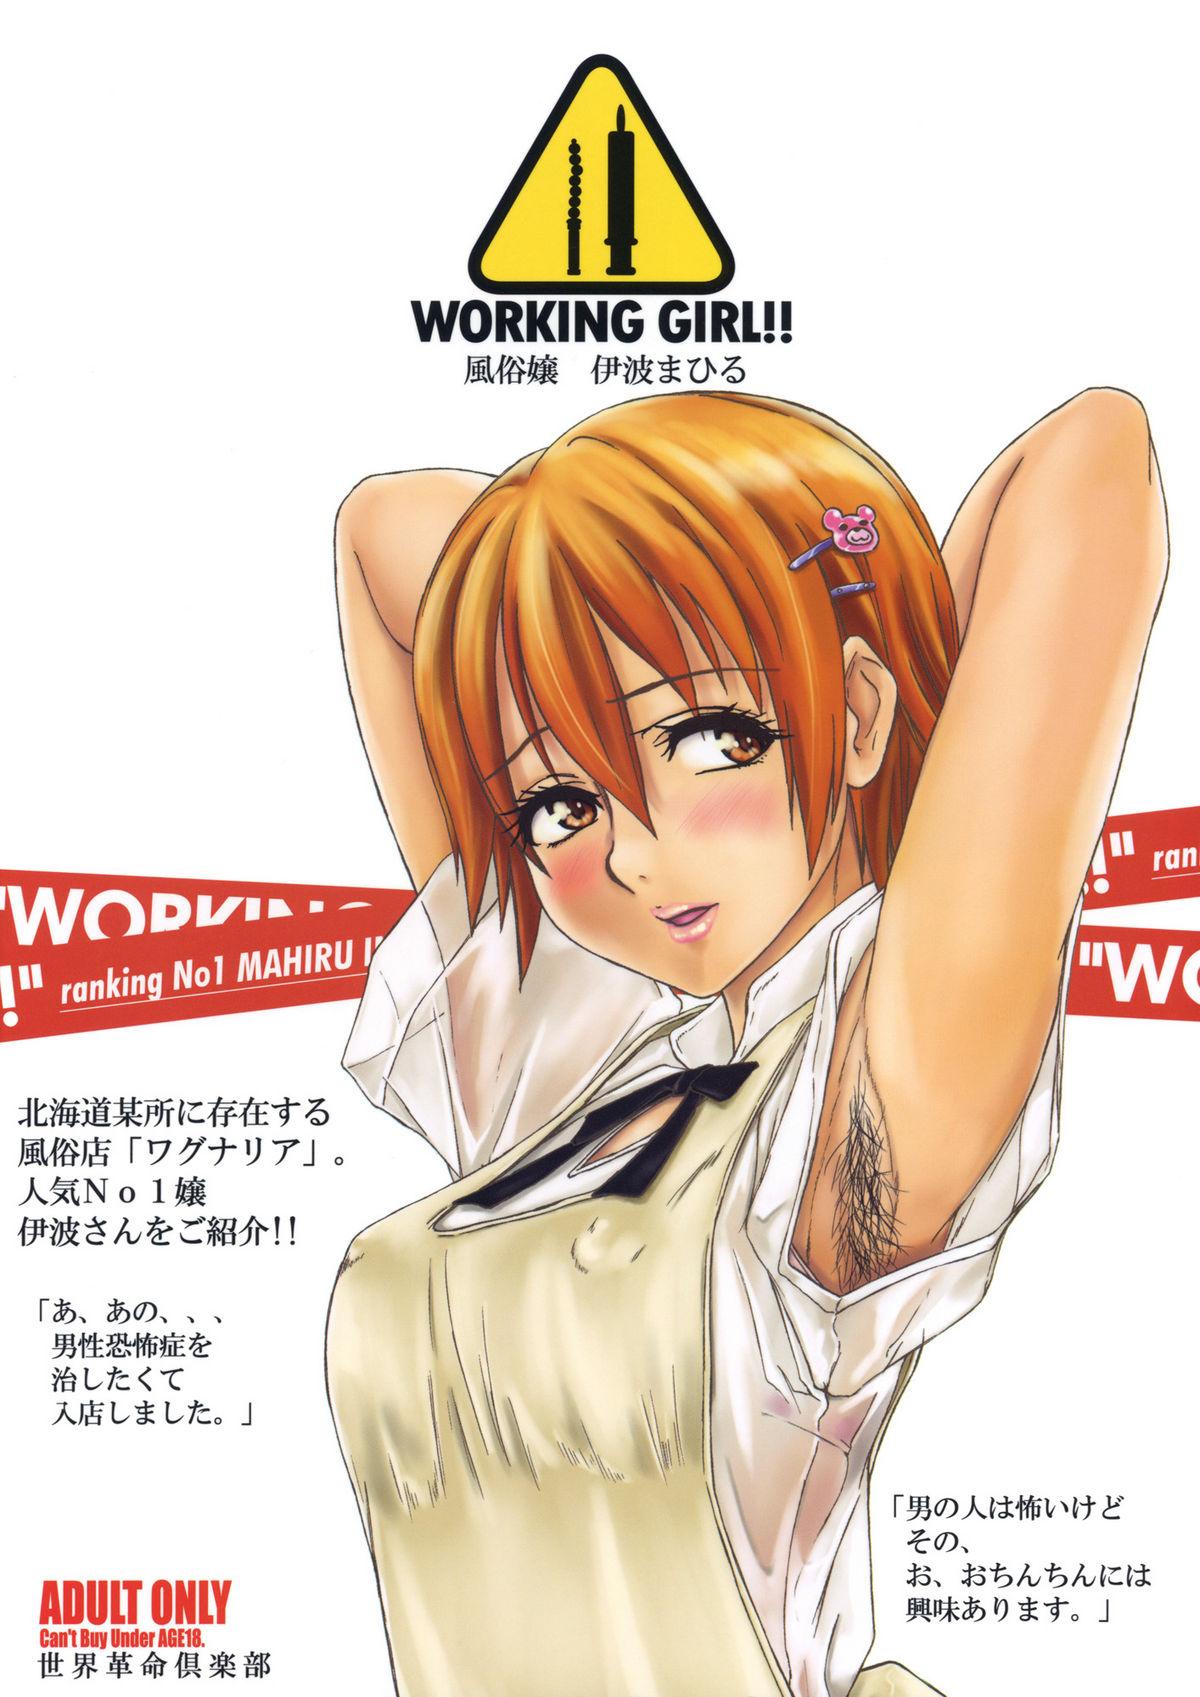 WORKING GIRL!! ranking No 1 Fuuzoku musume Inami Mahiru 37